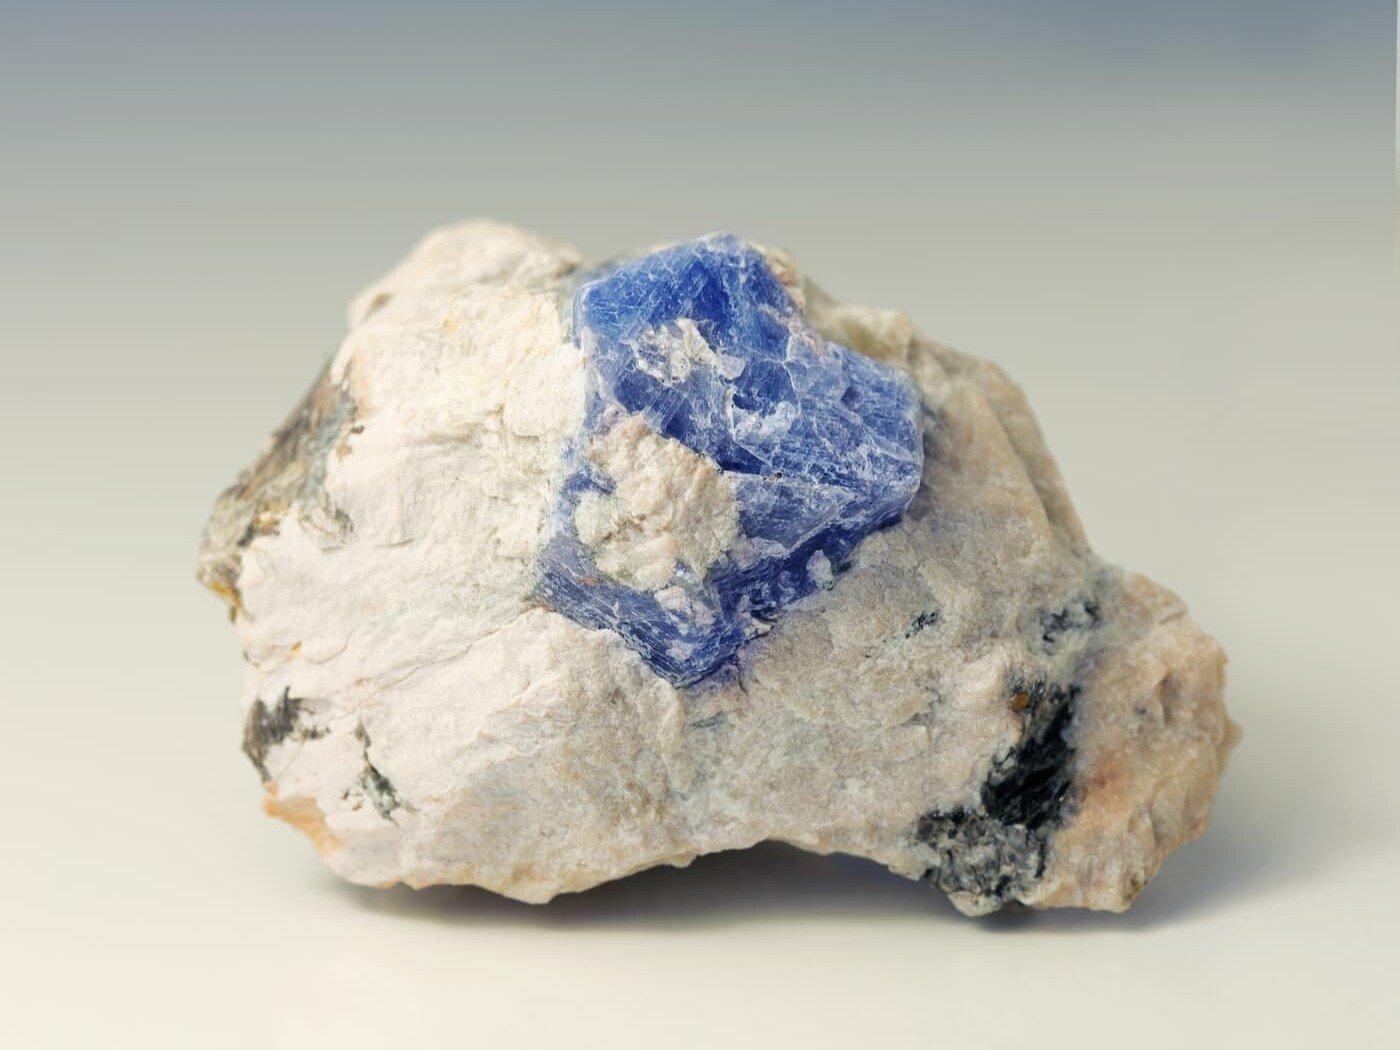 Sapphire ore - blue ore in white rock